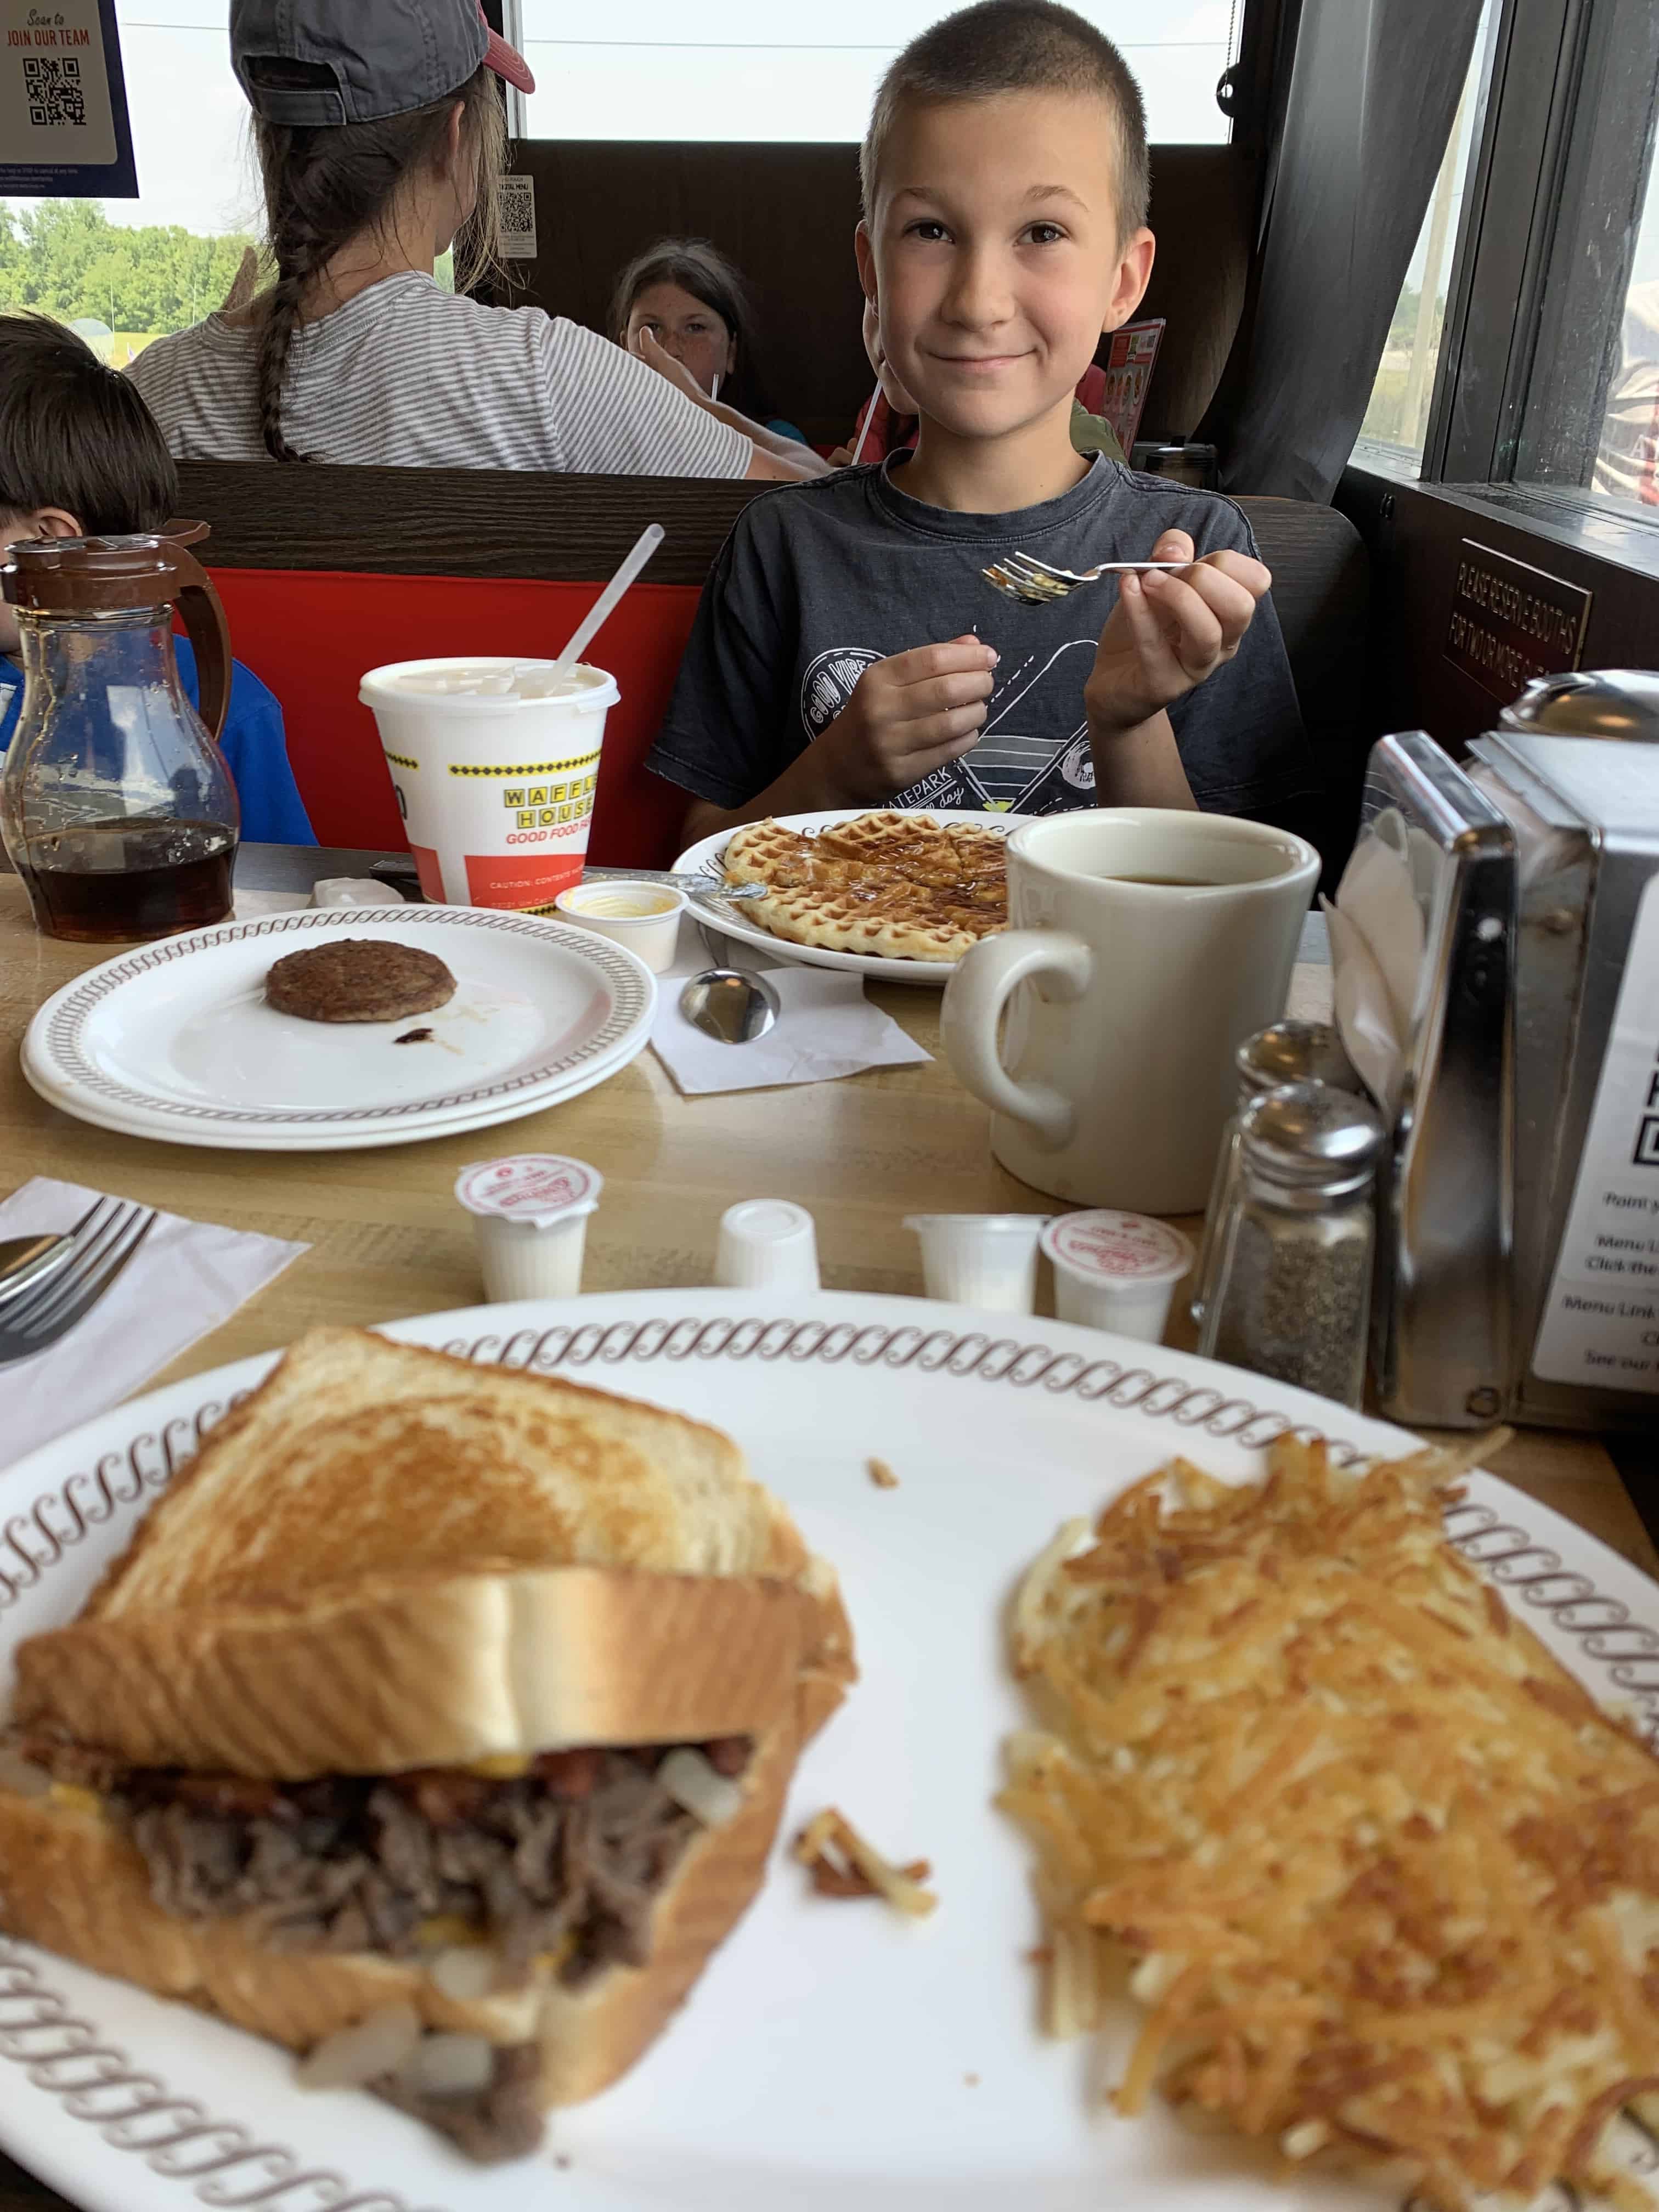 Boy enjoying waffle at Waffle House